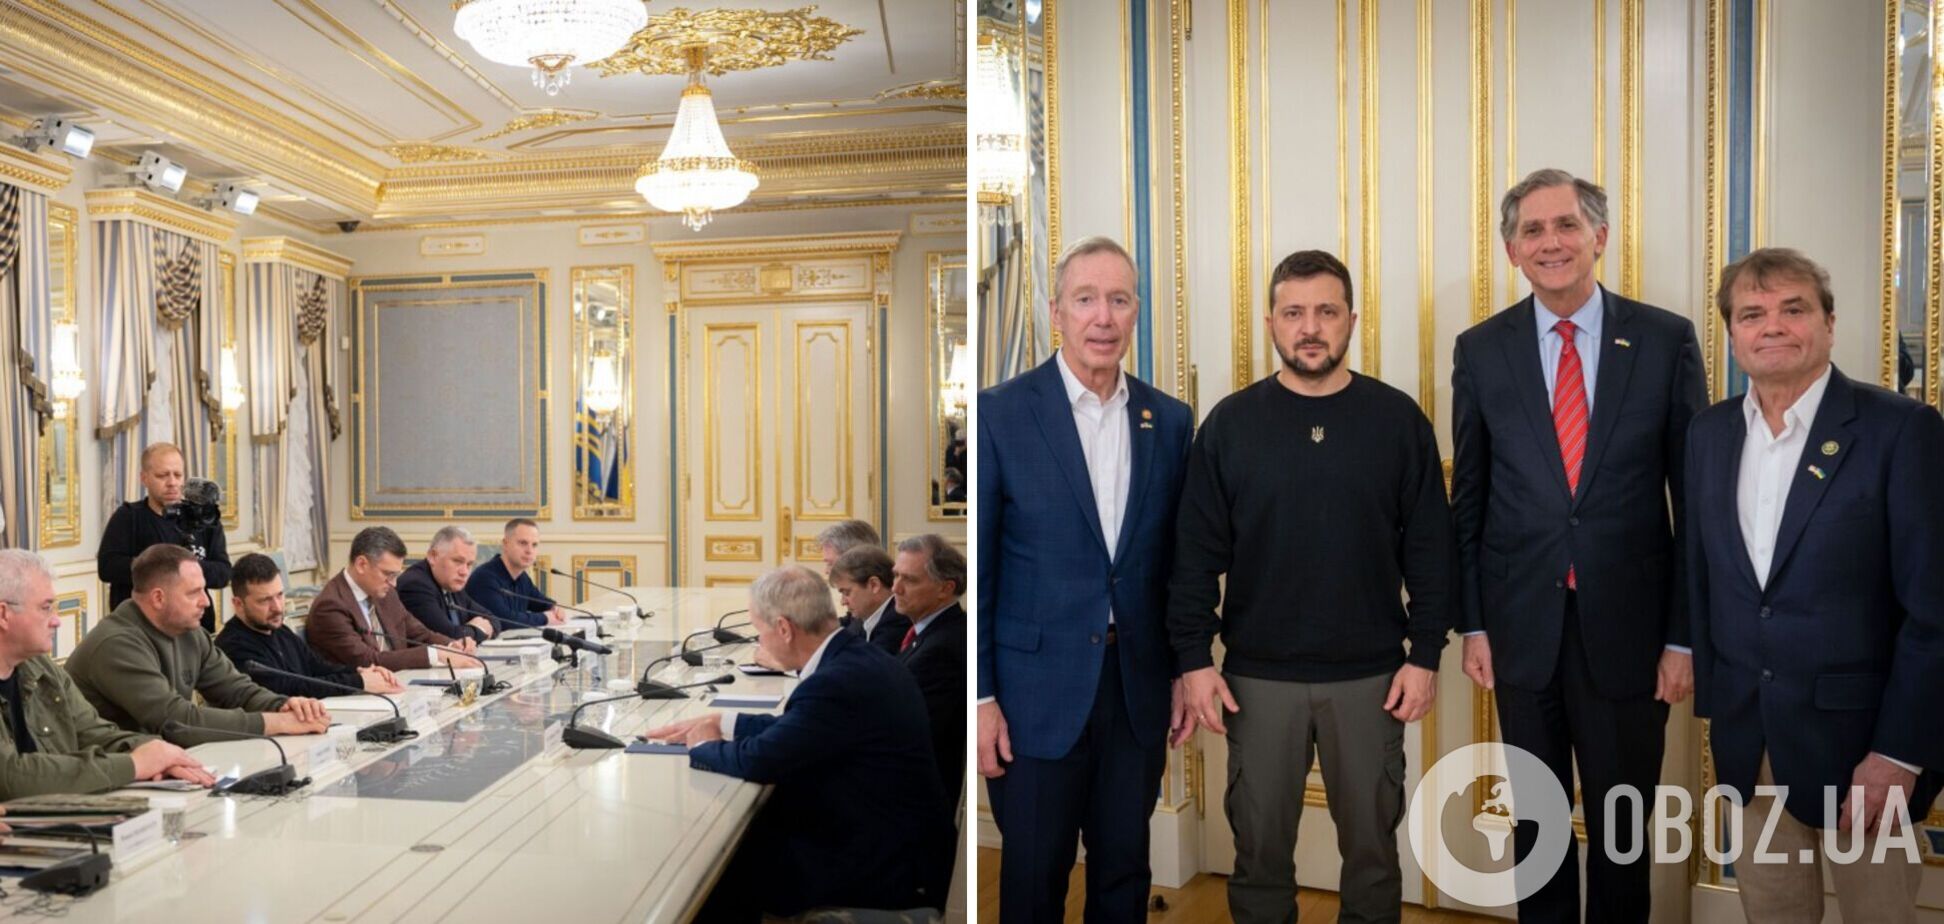 'Україна завжди цінувала підтримку обох партій': Зеленський зустрівся з двопартійною делегацією американських конгресменів. Фото і відео